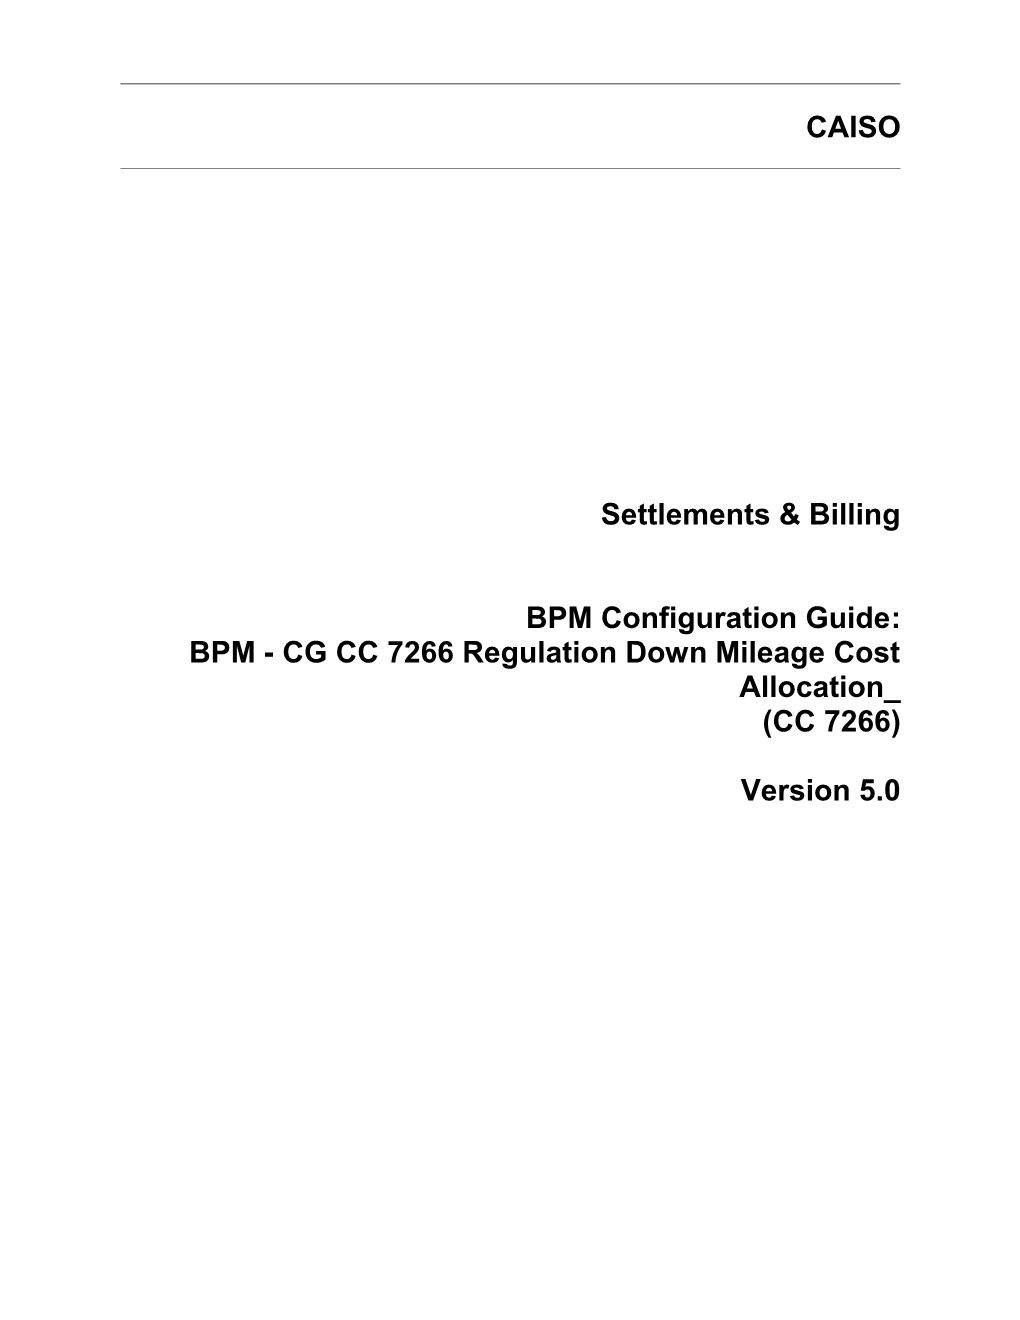 BPM - CG CC 7266 Regulation Down Mileage Cost Allocation